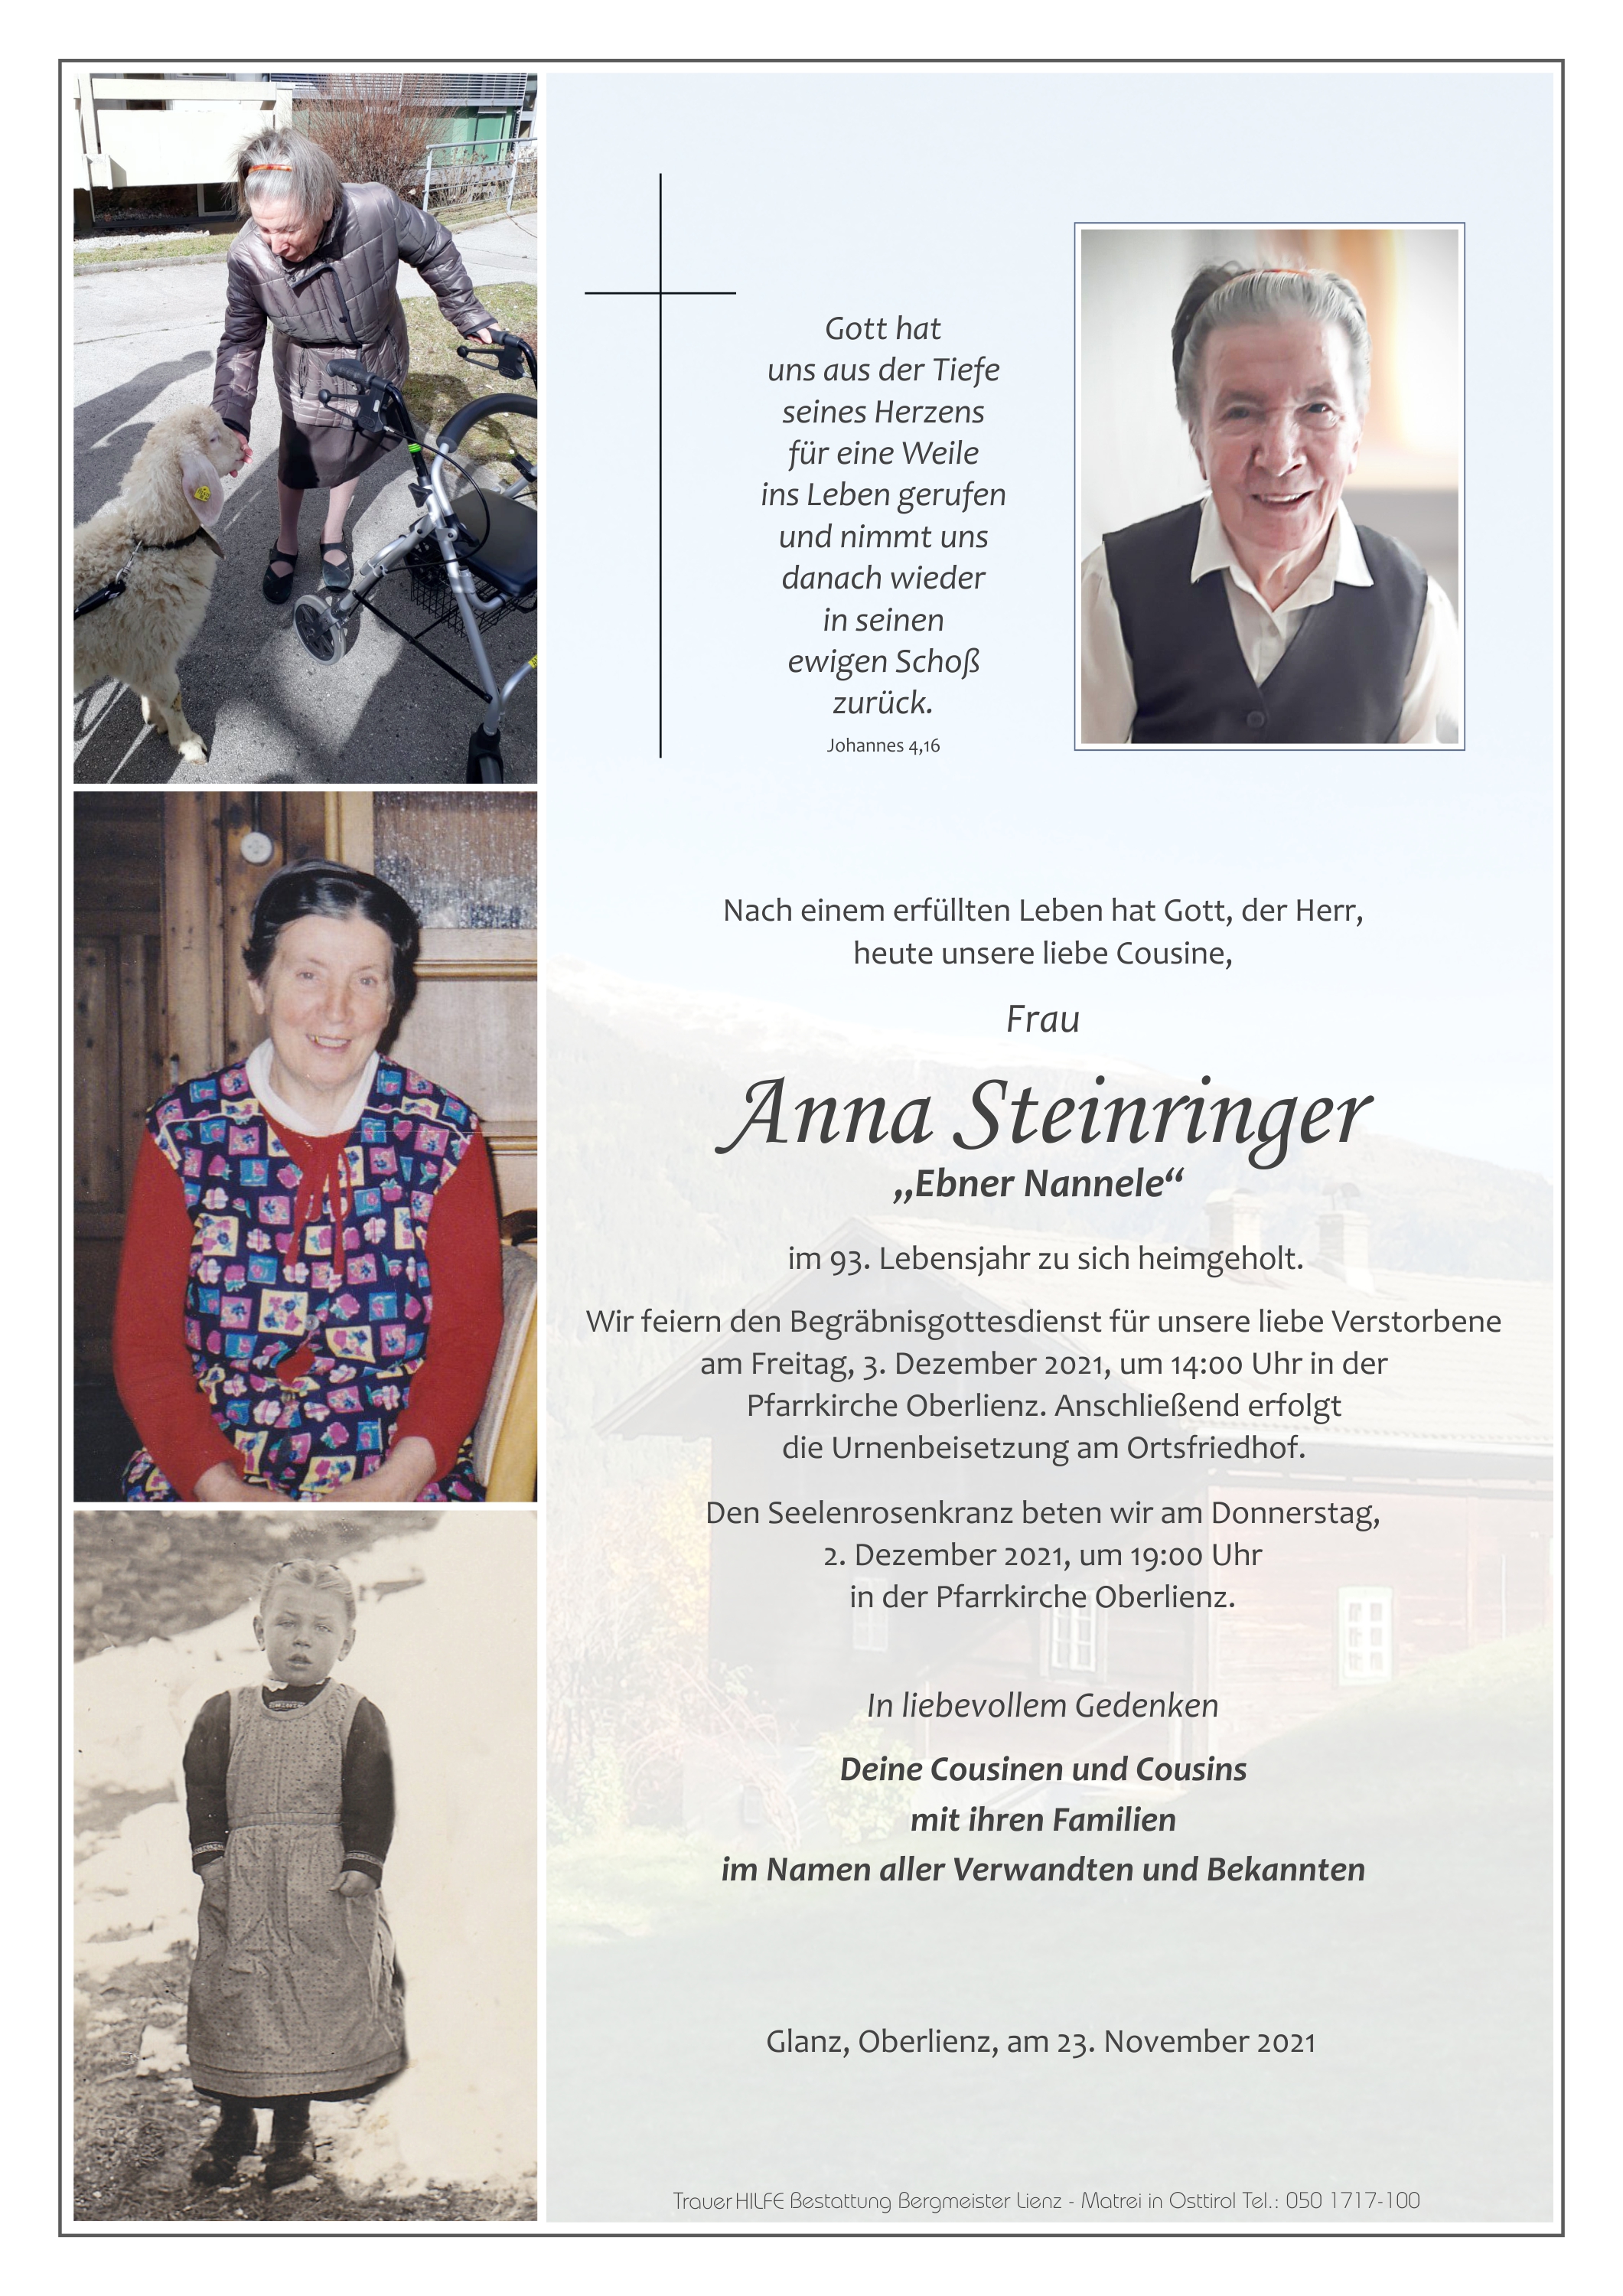 Anna Steinringer